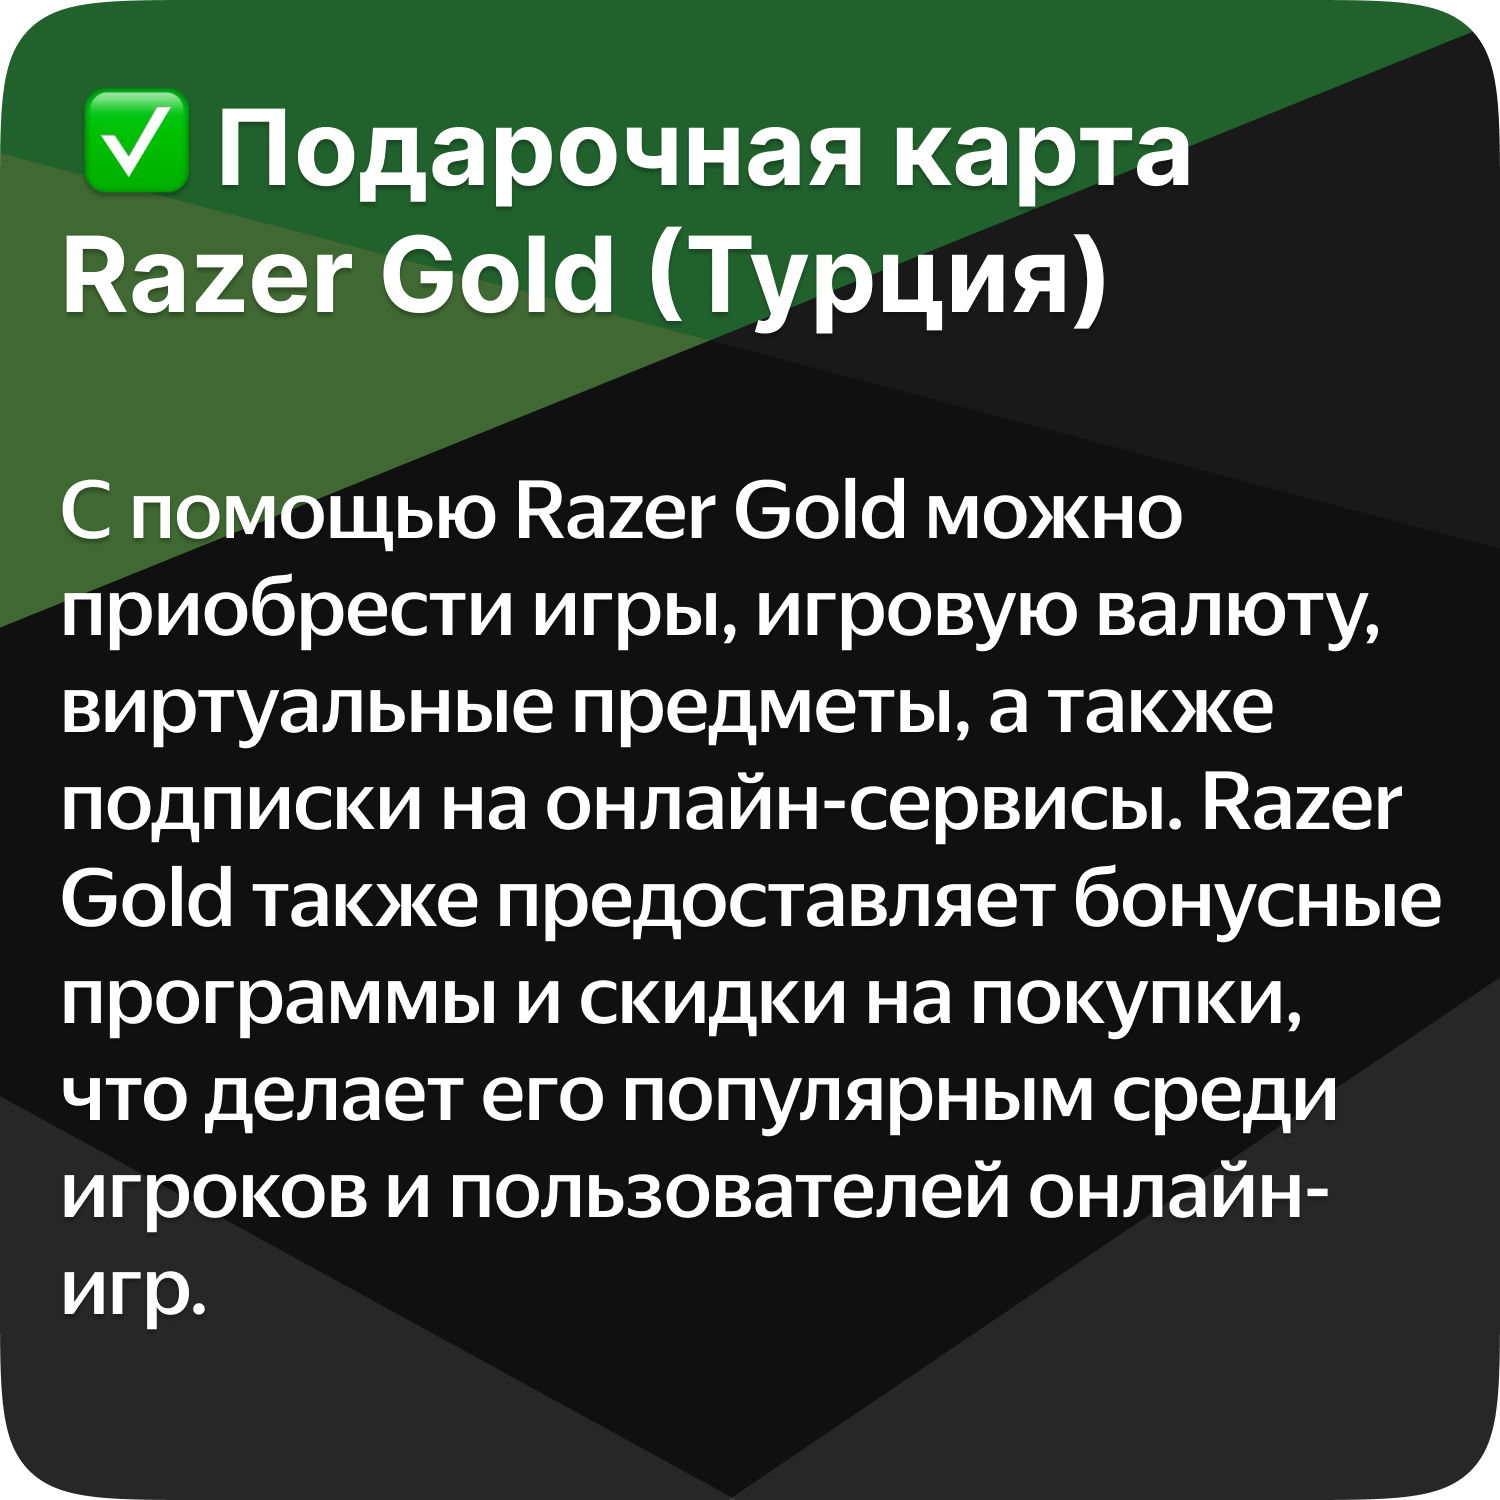 Подарочная карта Razer Gold PIN (Турция) - 50 лир